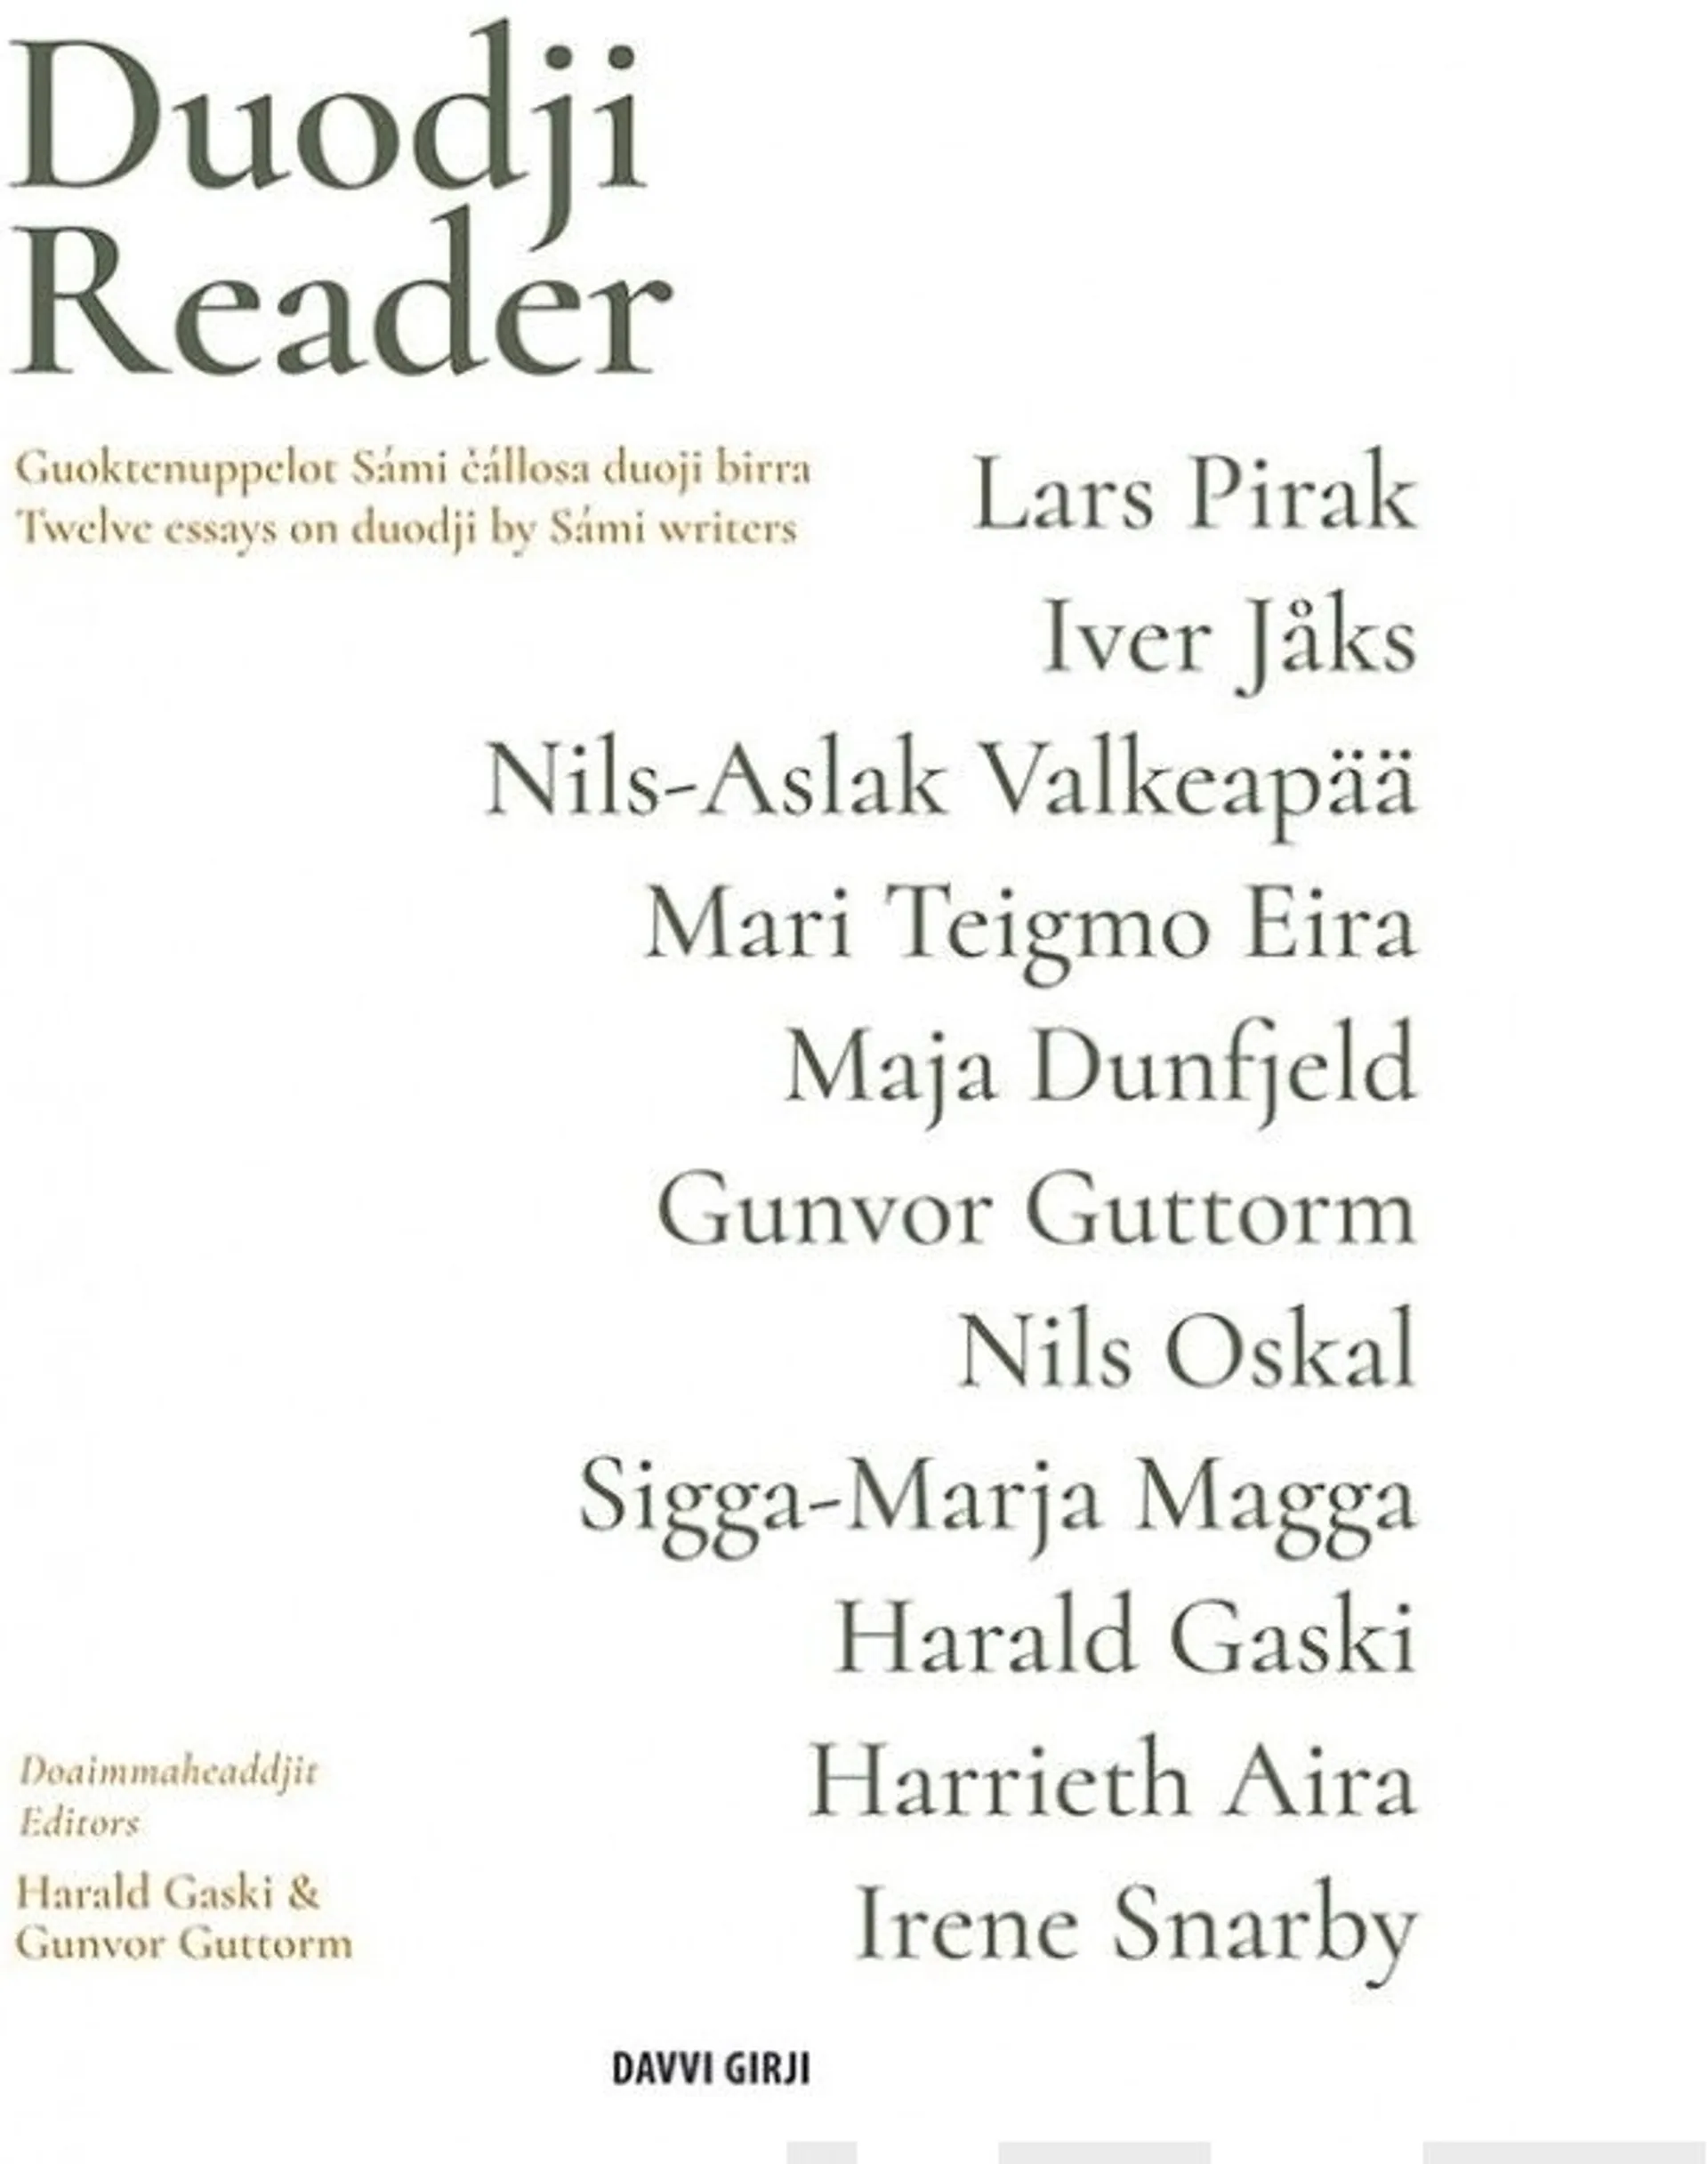 Gaski, Duodji Reader